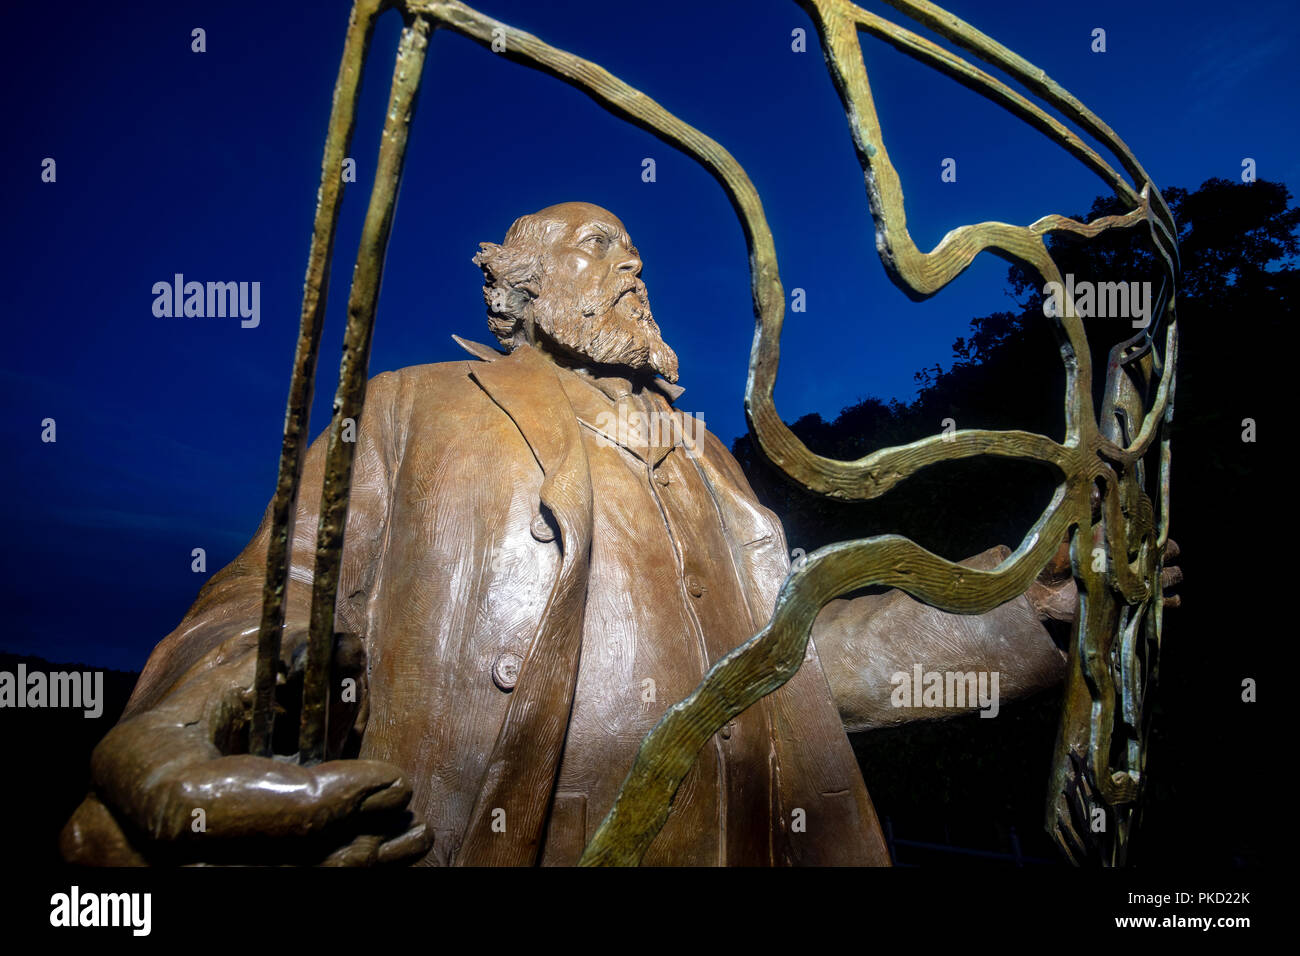 Frederick Law Olmsted - der Vater der amerikanischen Landschaftsarchitektur - Bronzestatue des Künstlers Zenos Frudakis - North Carolina Arboretum, Asheville, Nort Stockfoto